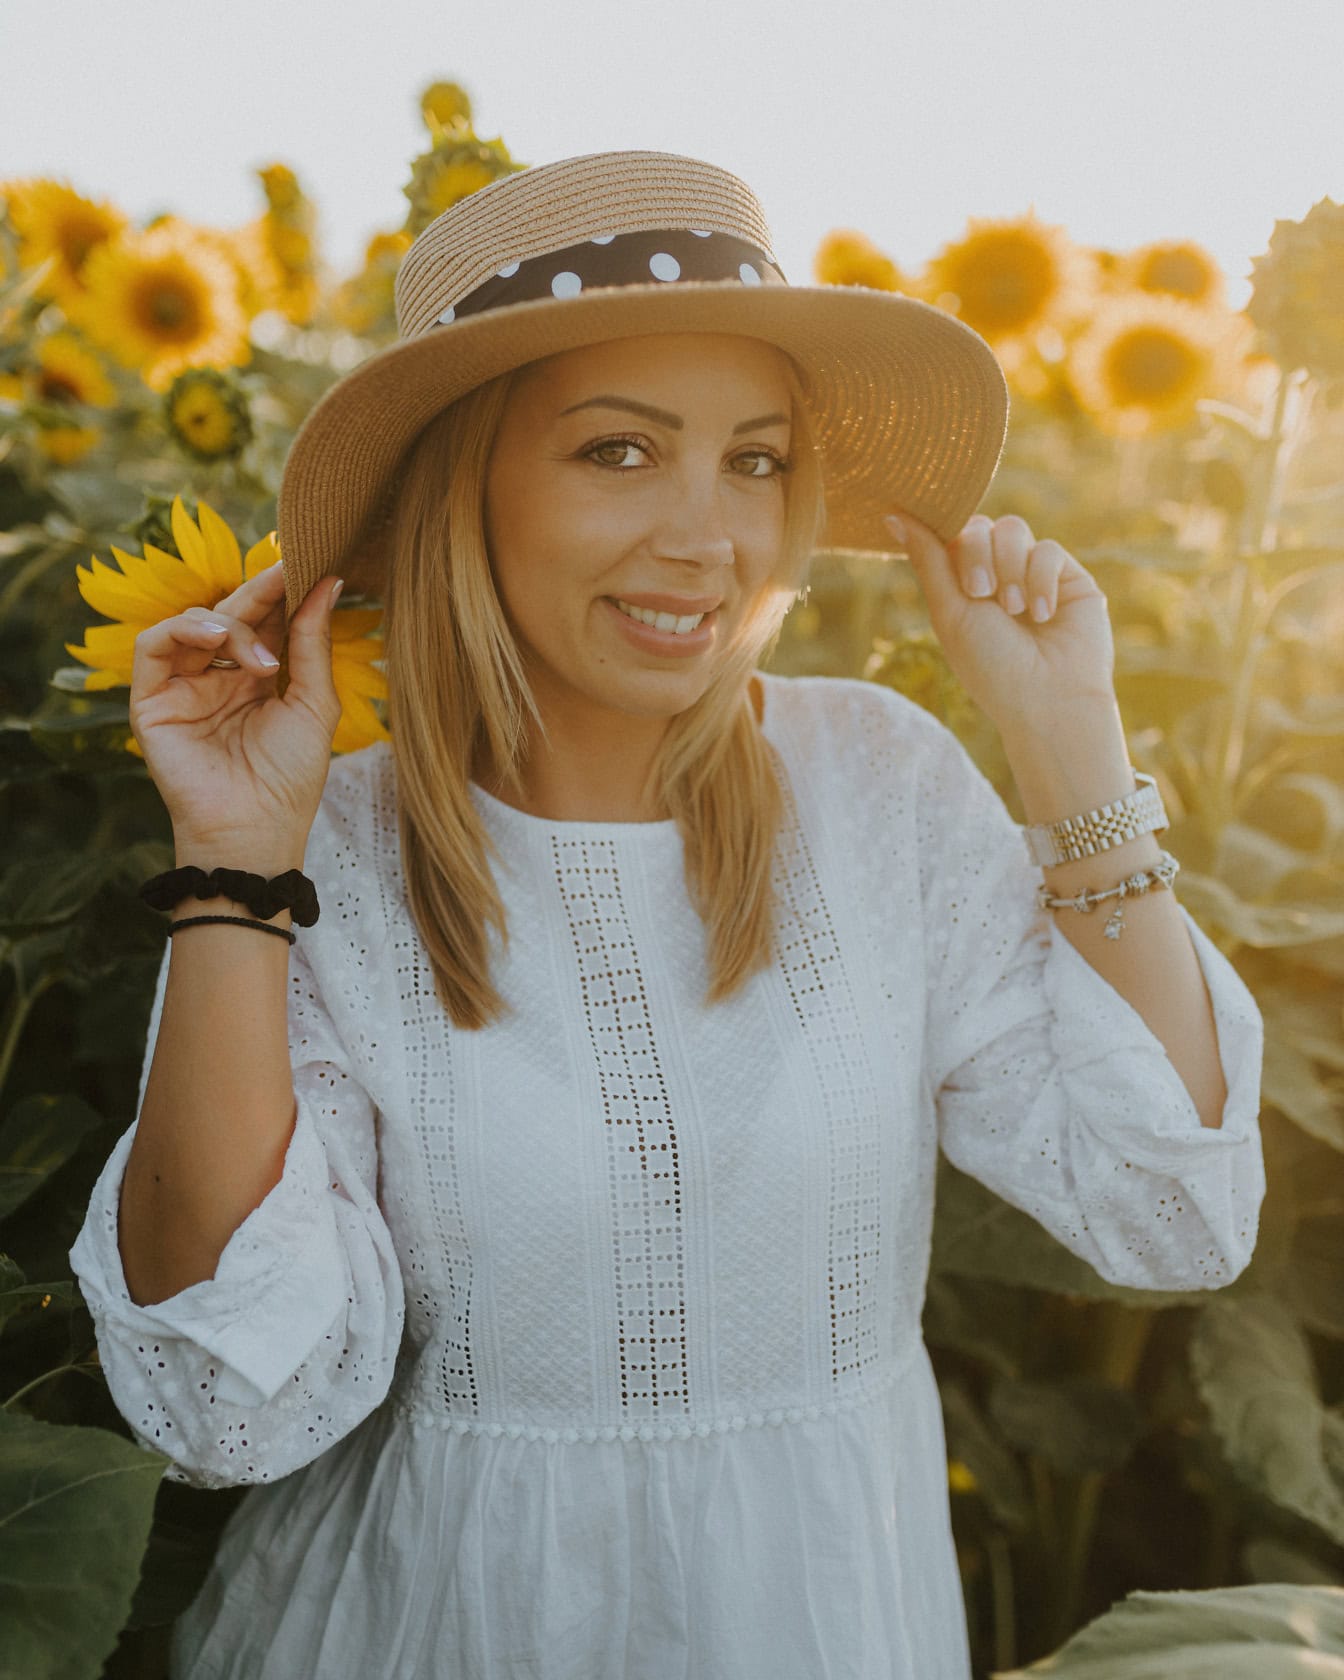 Profesionální portrétní fotografie dobře vypadající ženy ve slaměném klobouku na poli slunečnic